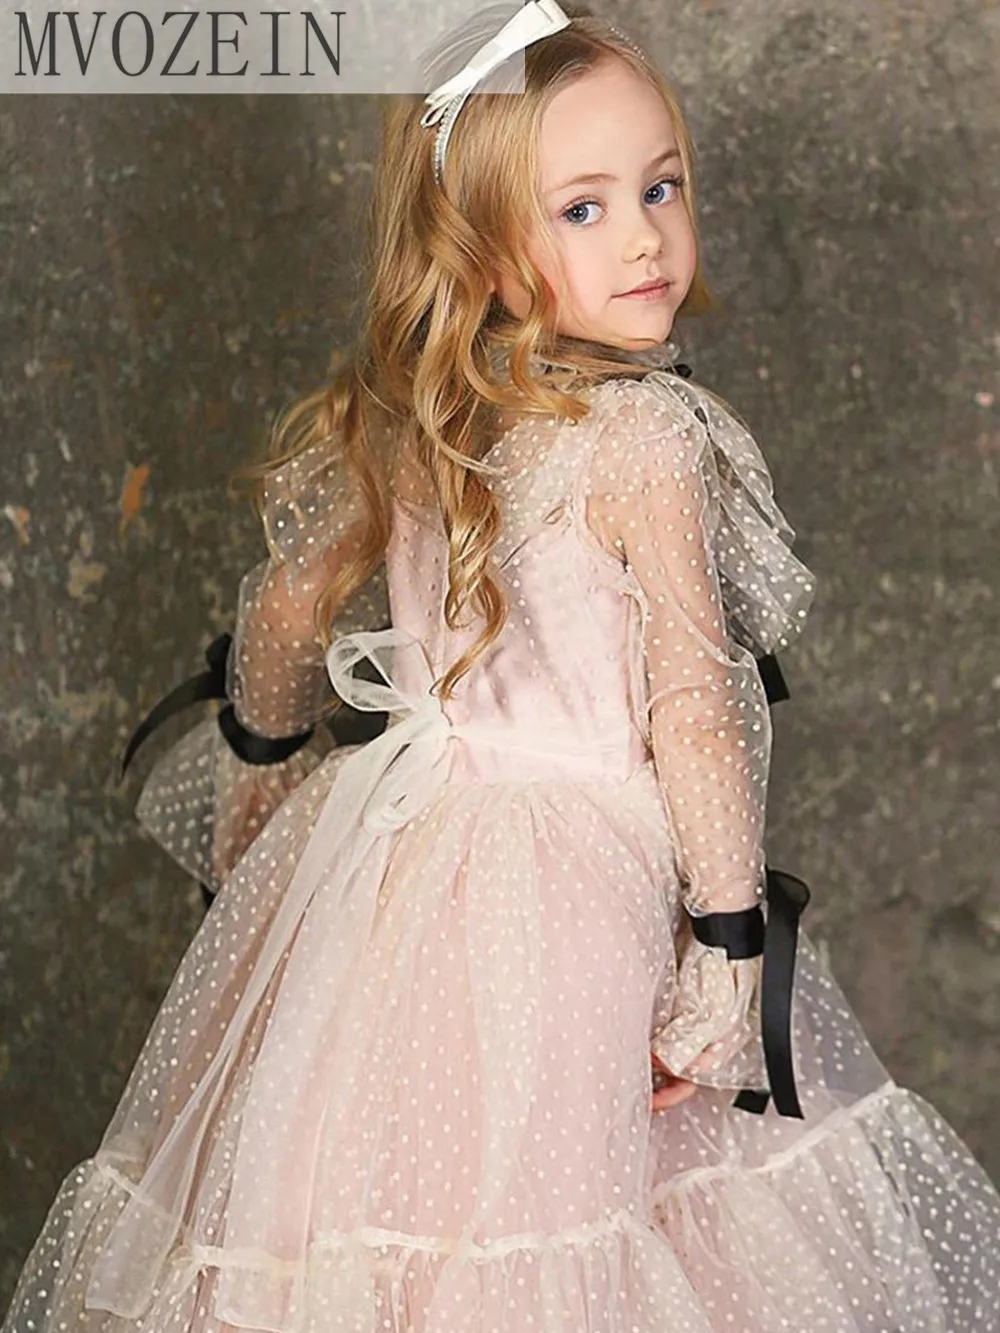 Mvozein Pundunud lilleneiu Kleit Polka-dot Tülli Sünnipäev Tüdruk Kleit Pikkade Varrukatega Tüdruk Pulmapidu Kleit Laste Kleit - 1